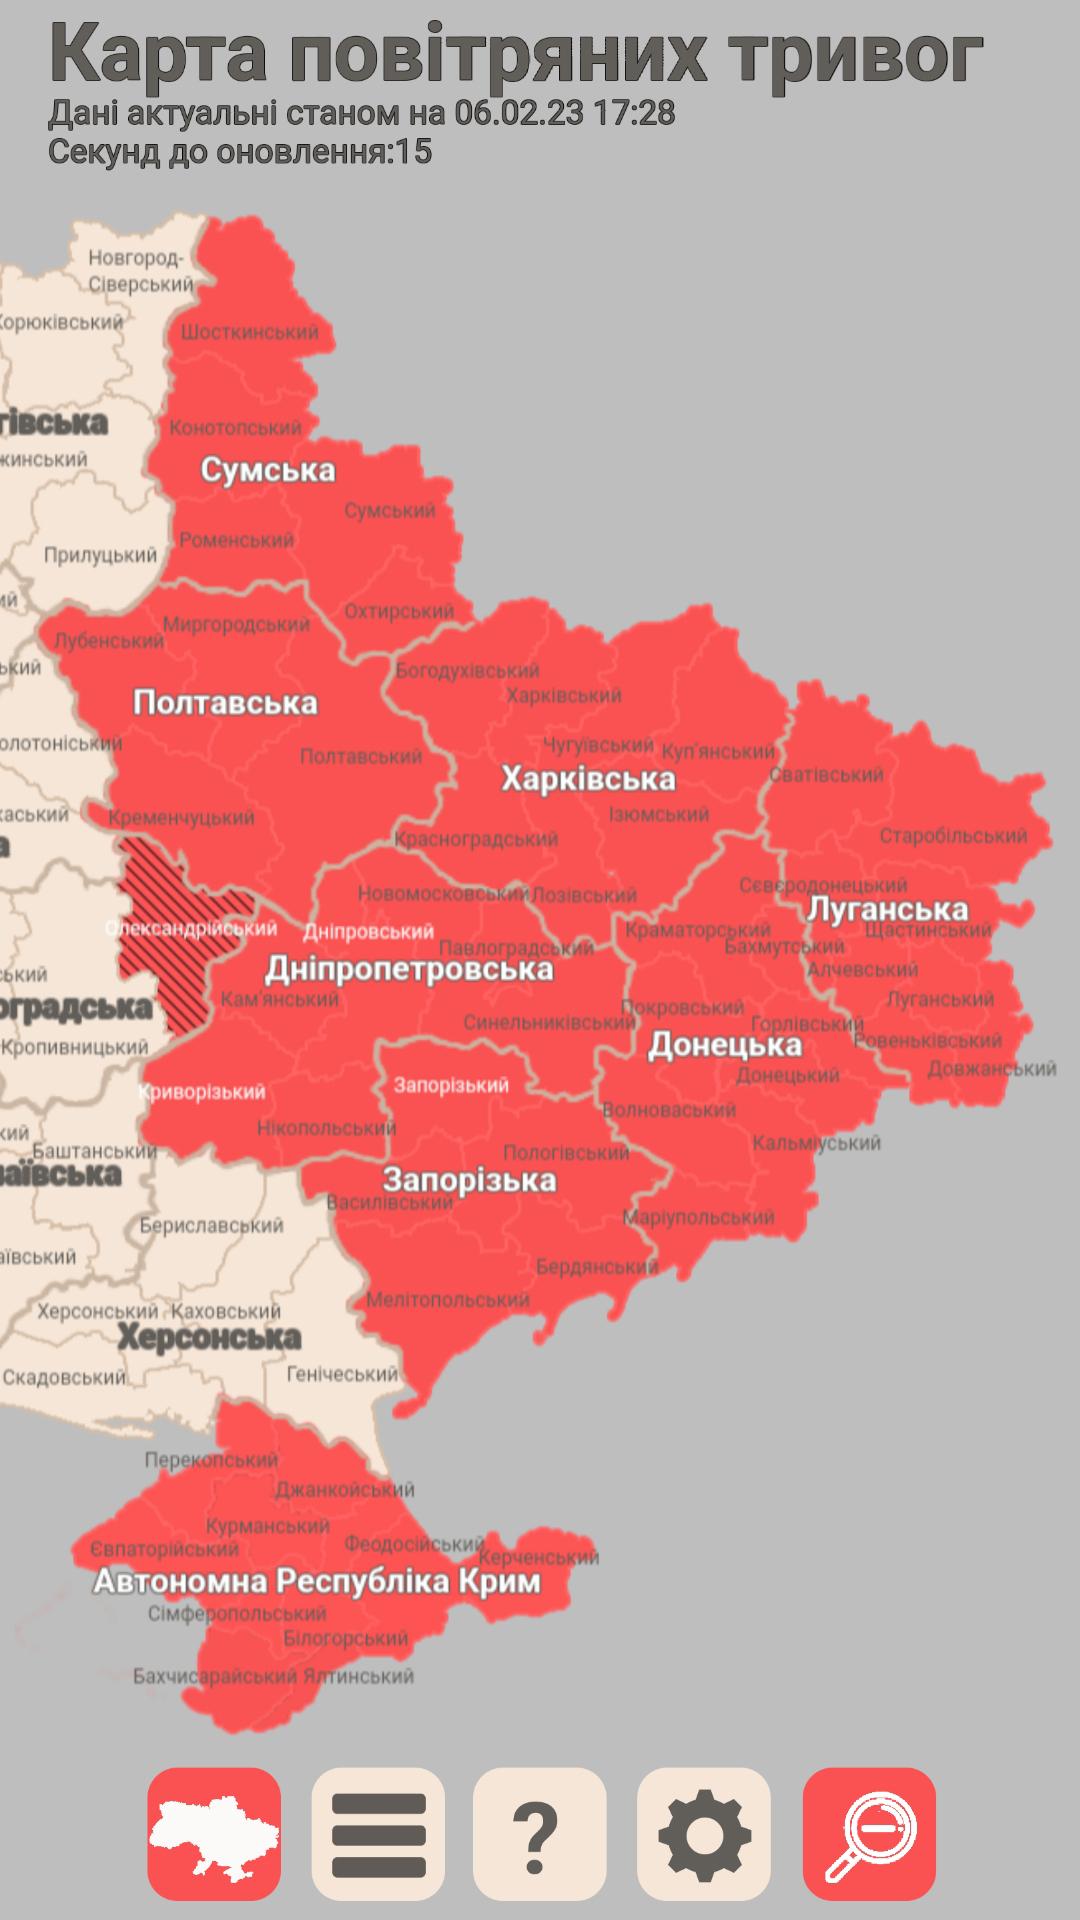 Карта тривог. Карта тревог в Украине. Карта повітряних тривог в Україні. Карта повитряних тревог украины